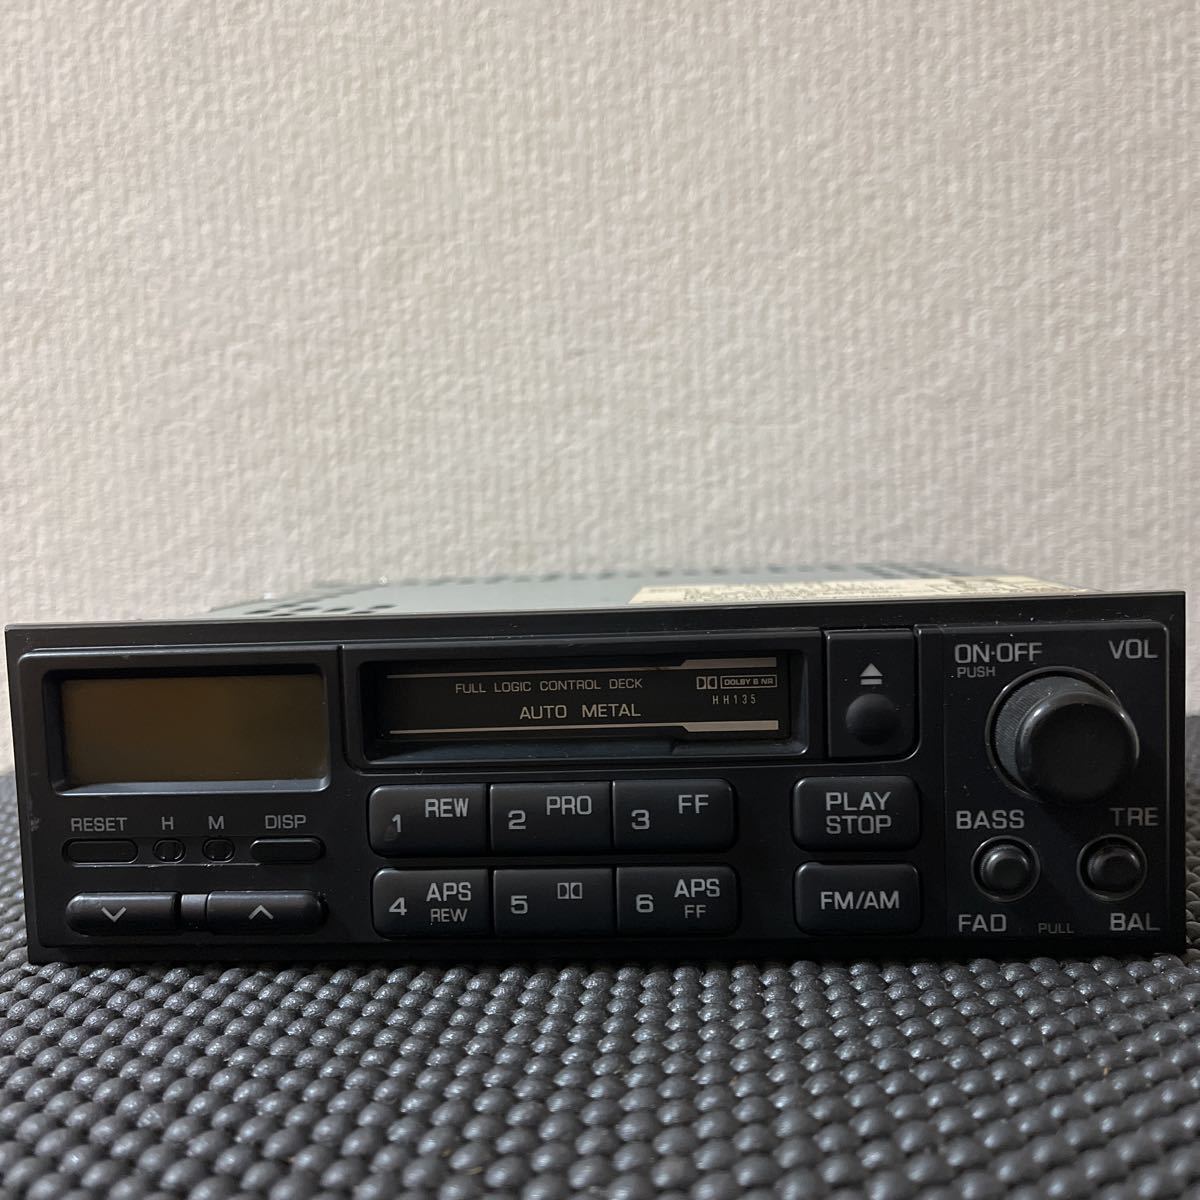  Ниссан Nissan оригинальный кассетная дека CSK-9511D текущее состояние товар 